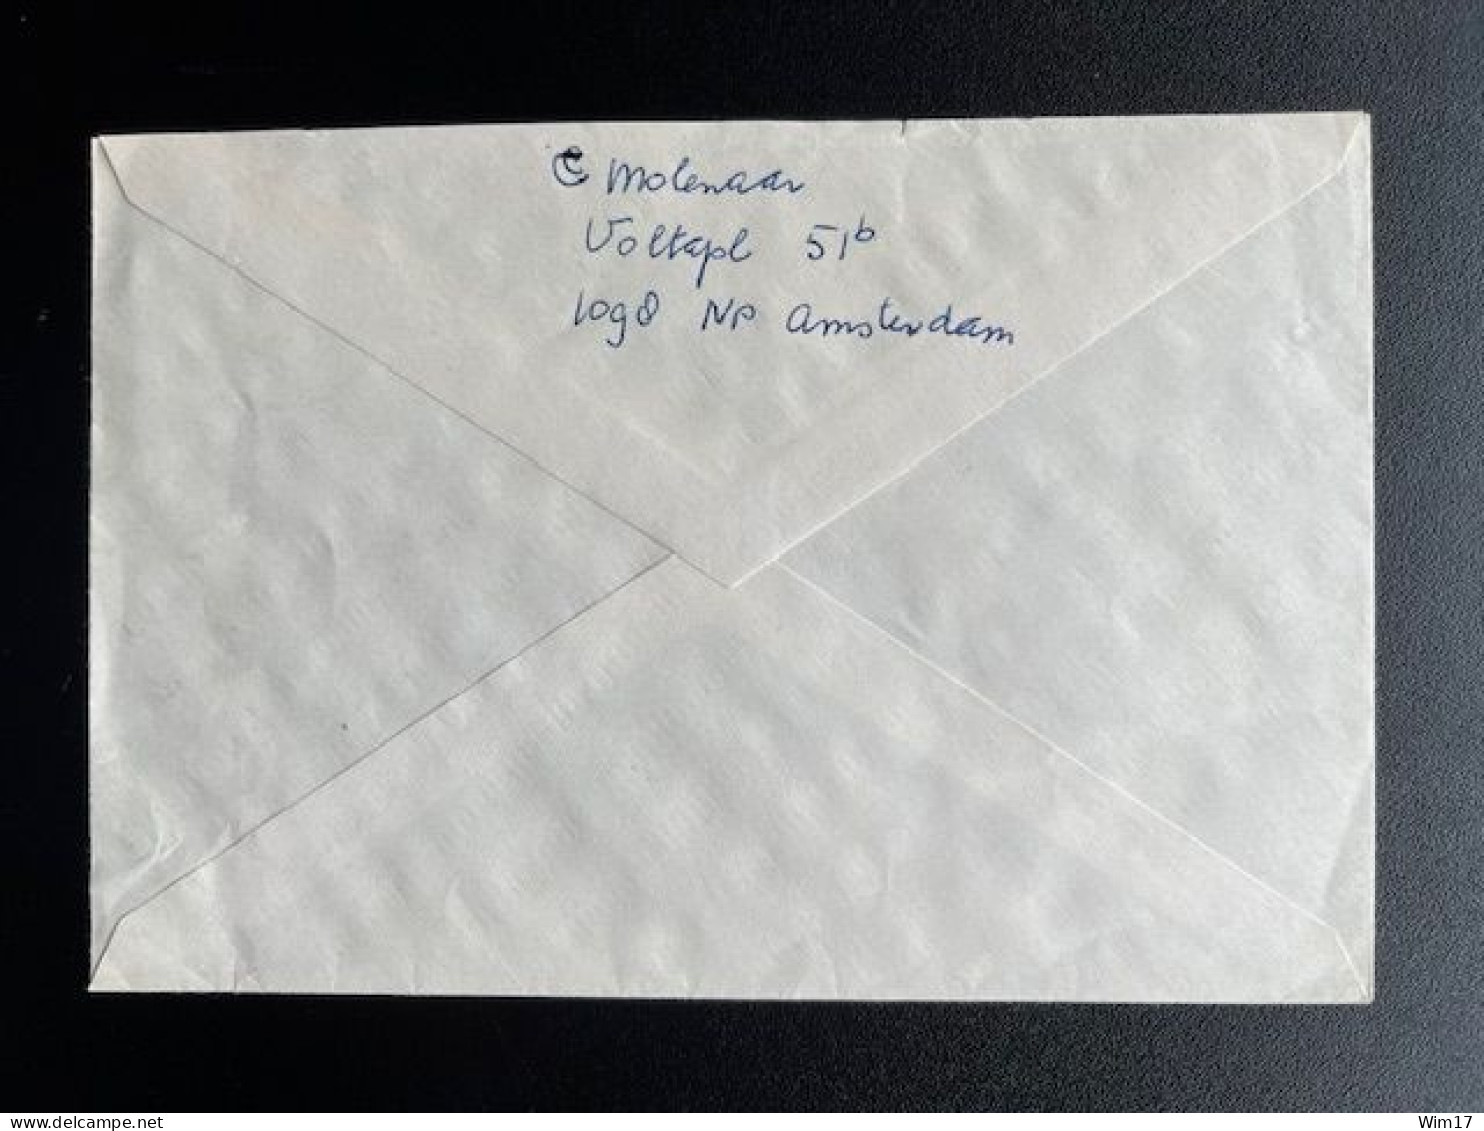 NETHERLANDS 1993 REGISTERED LETTER AMSTERDAM LINNAEUSPARKWEG TO AMSTERDAM 04-07-1993 NEDERLAND AANGETEKEND - Lettres & Documents